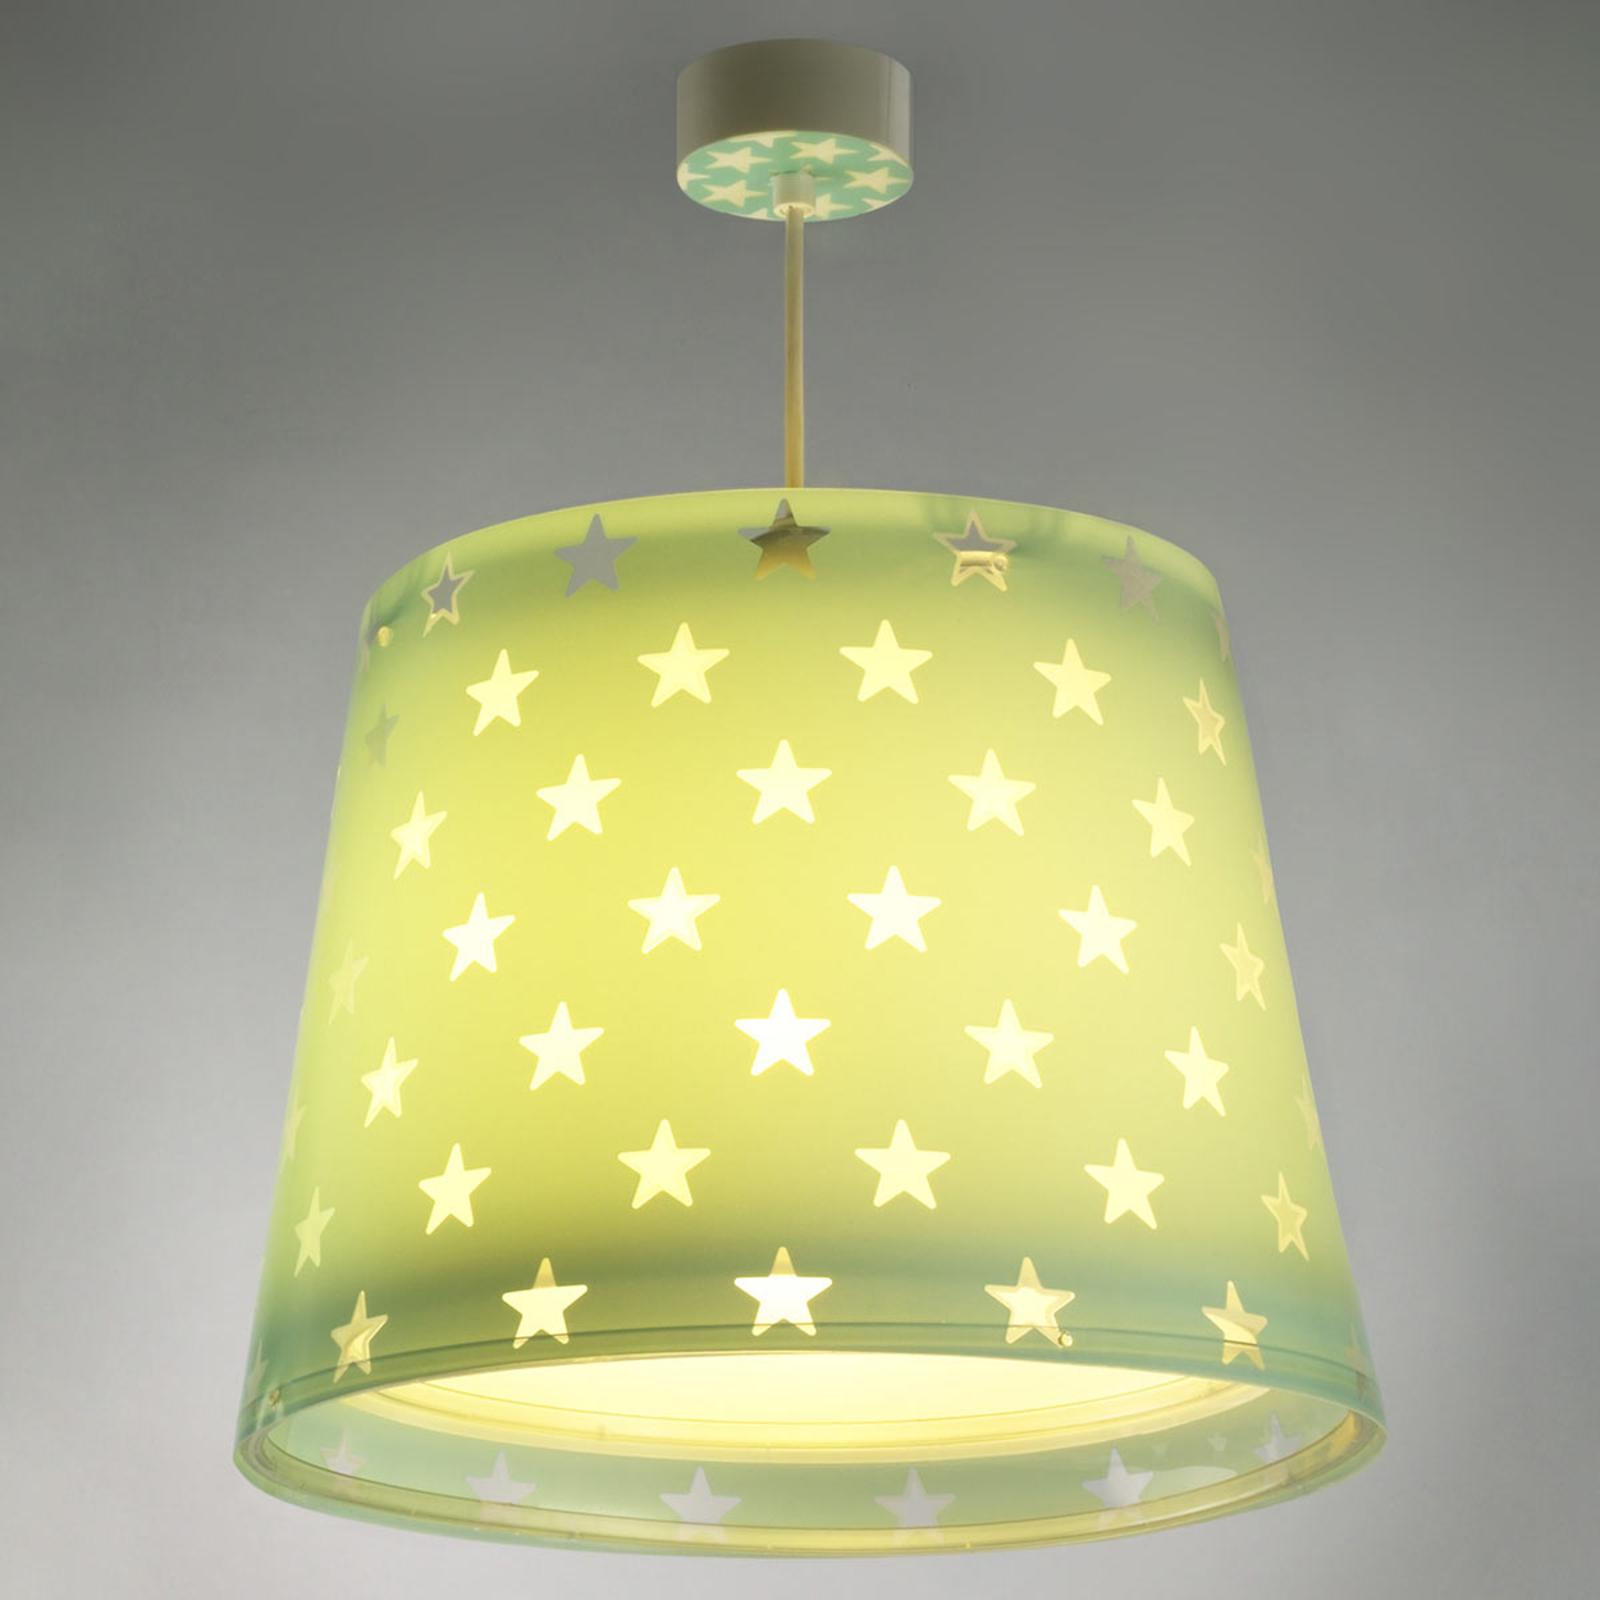 Con efecto luminoso - Lámpara colgante STAR para habitaciones infantiles